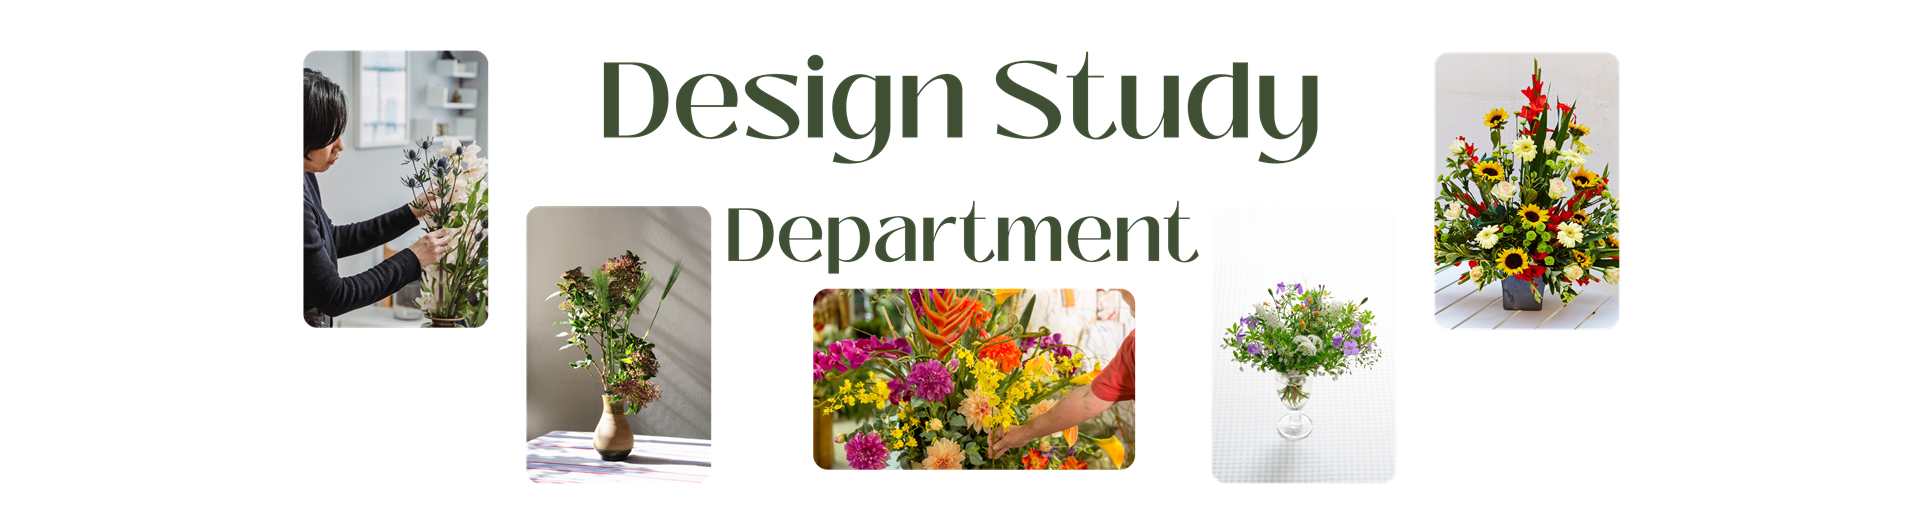 Design Study Department